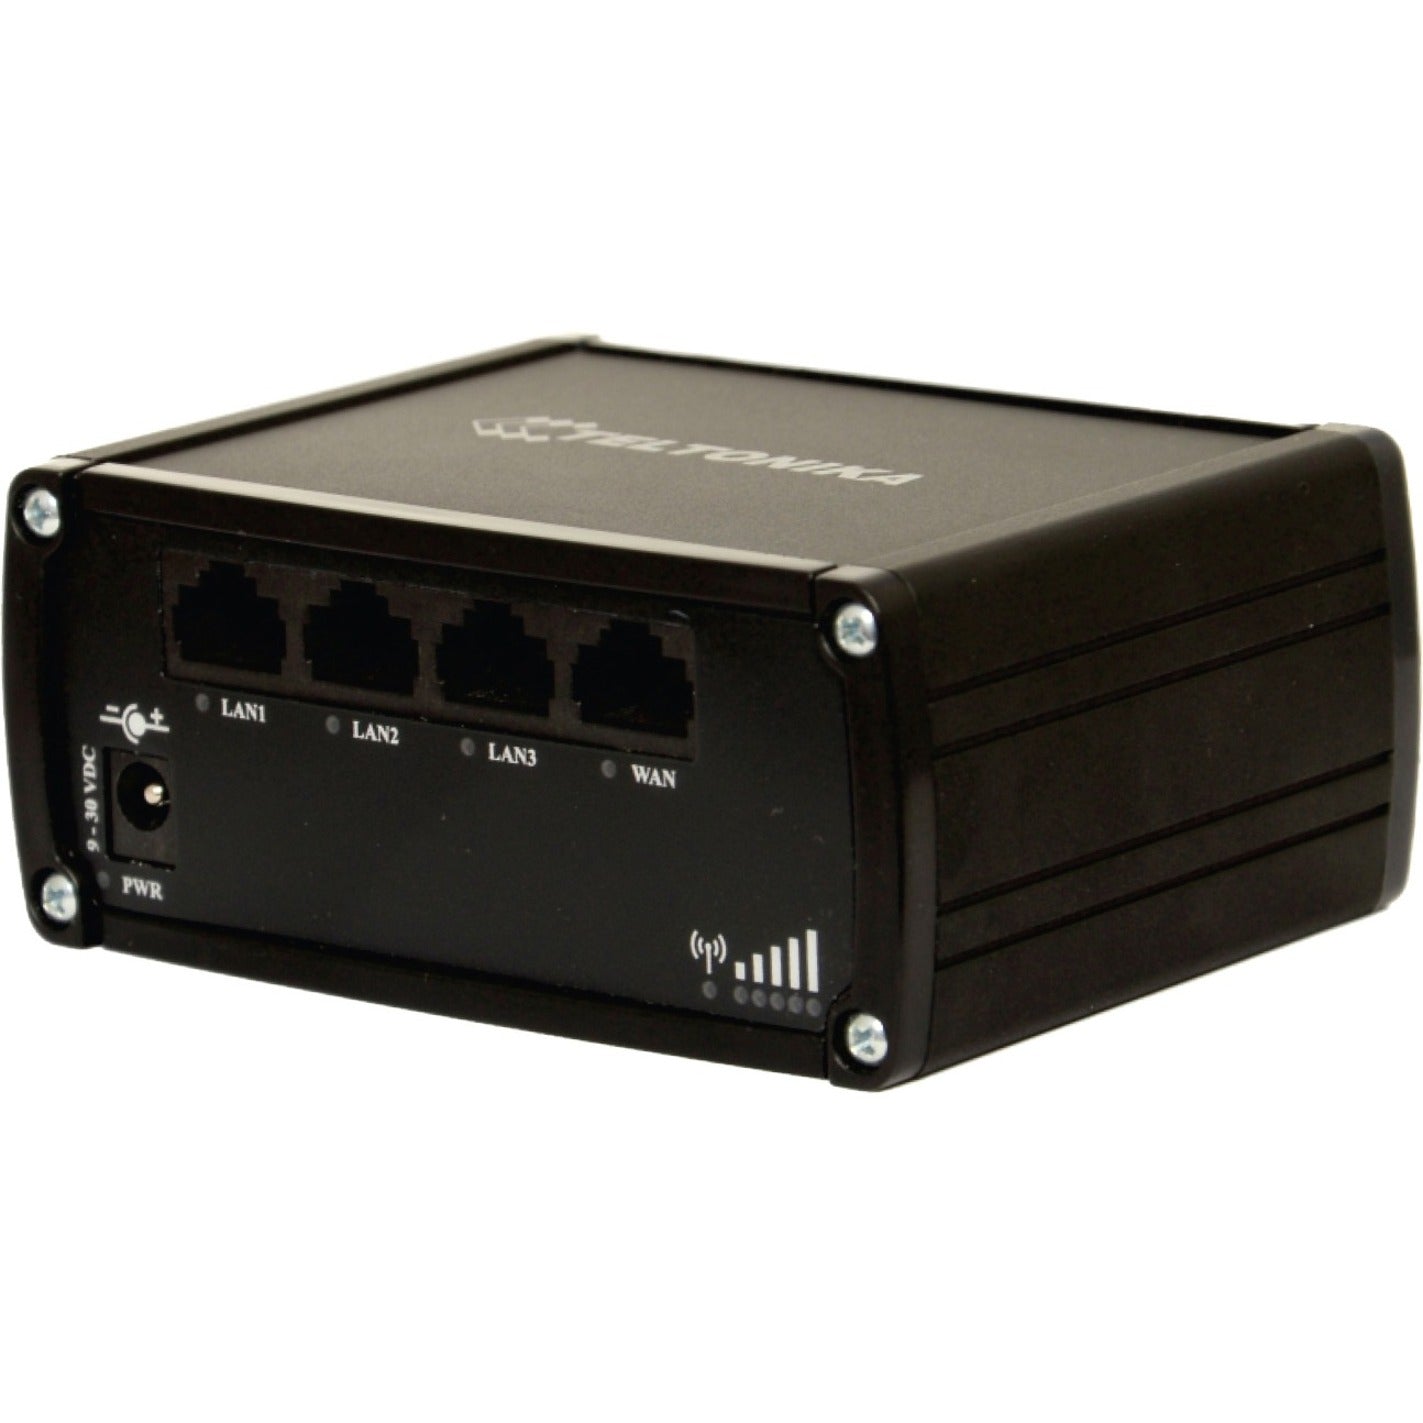 Teltonika Wi-Fi 4 IEEE 802.11n Cellular Wireless Router (RUT950)